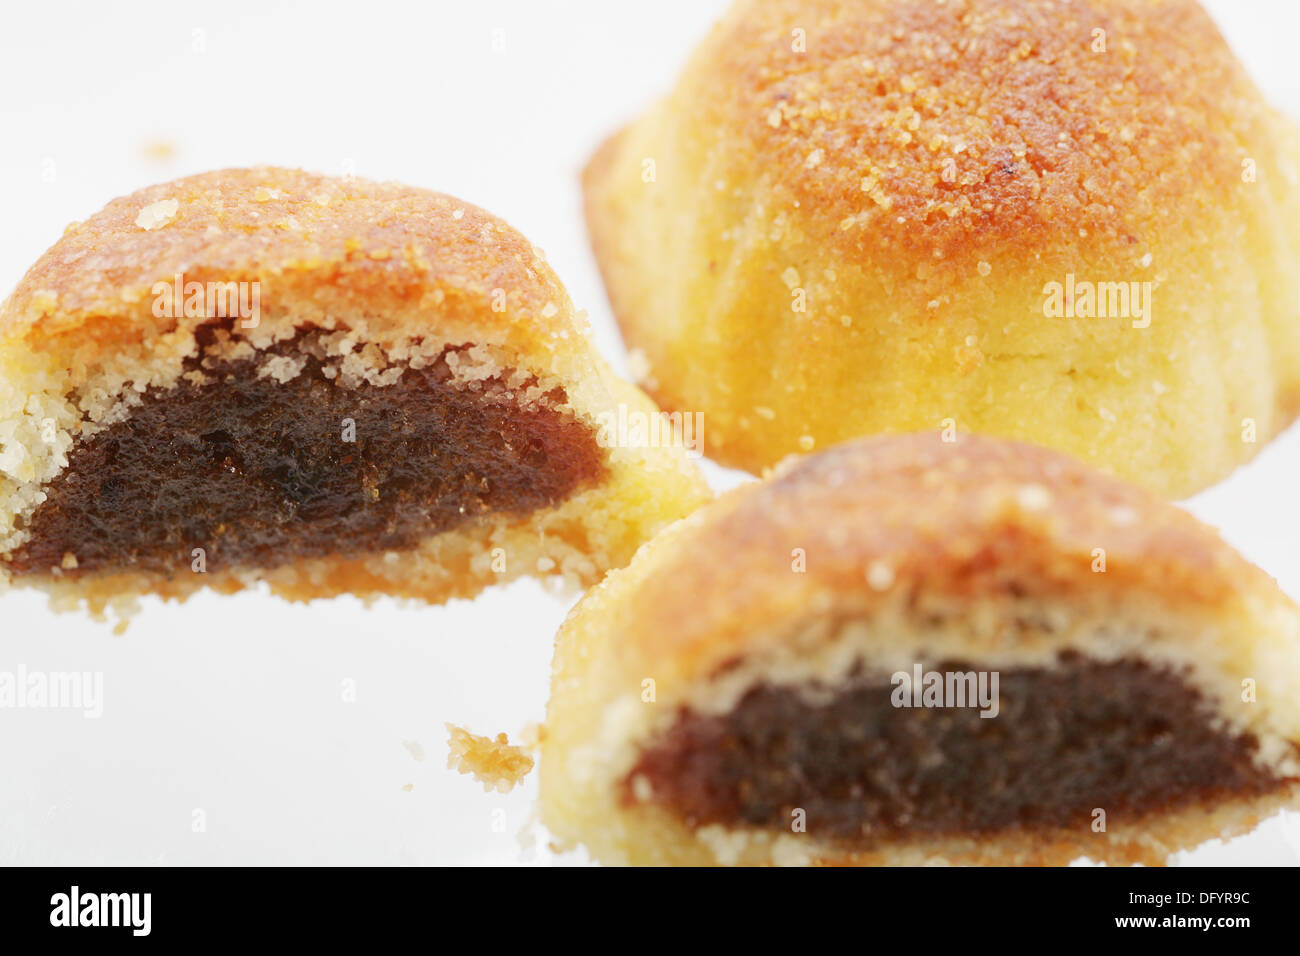 Dessert libanais Maamoul , Tamer bi. Typique libanais cookie de Pâques. L'accent dans le cookie de gauche. Banque D'Images